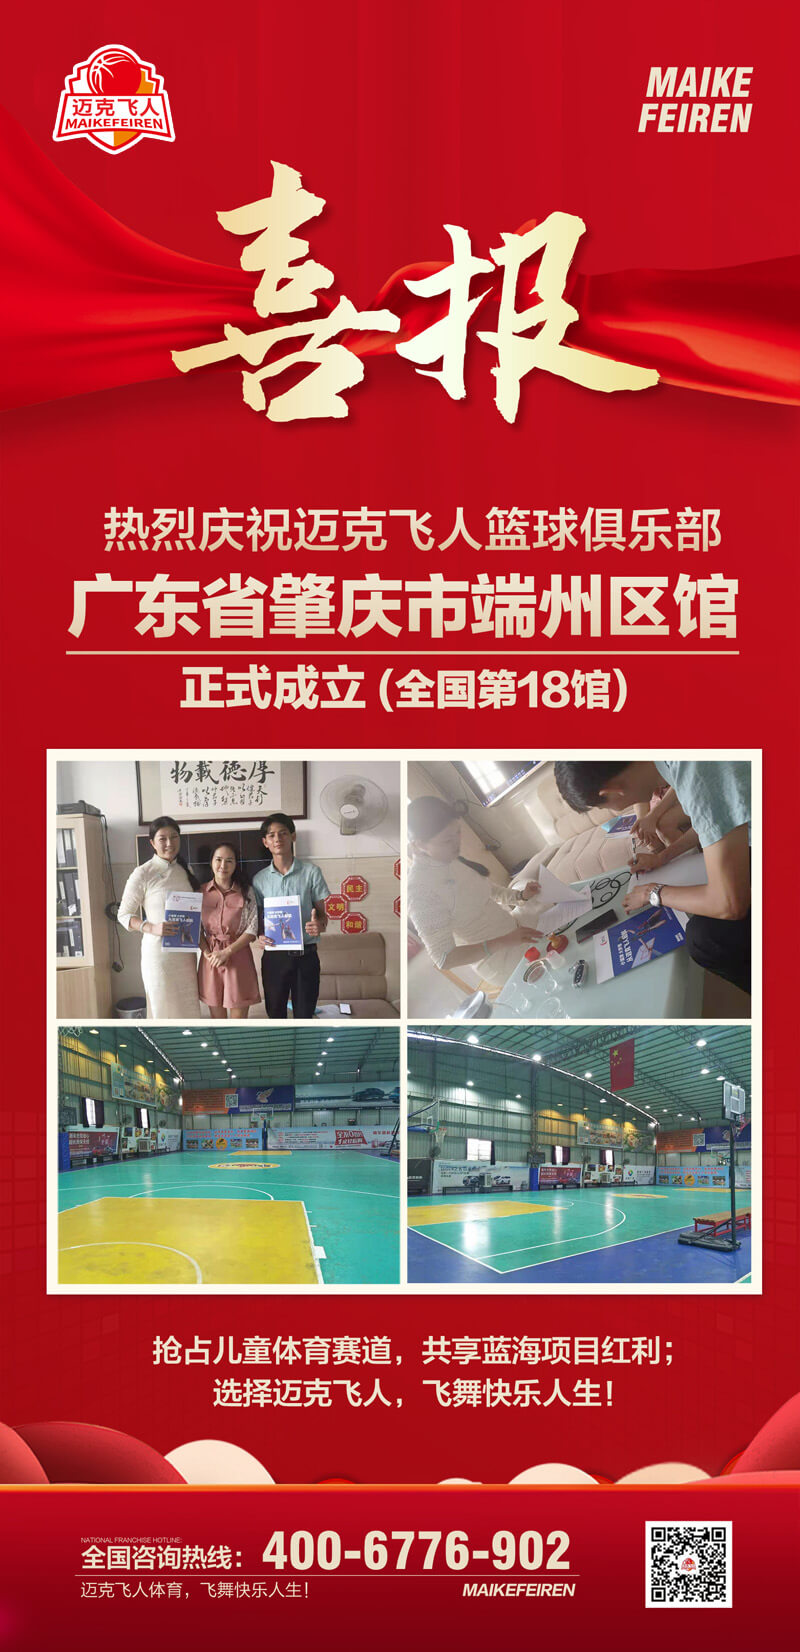 篮球加盟喜报：迈克飞人篮球俱乐部广东肇庆端州区馆正式成立